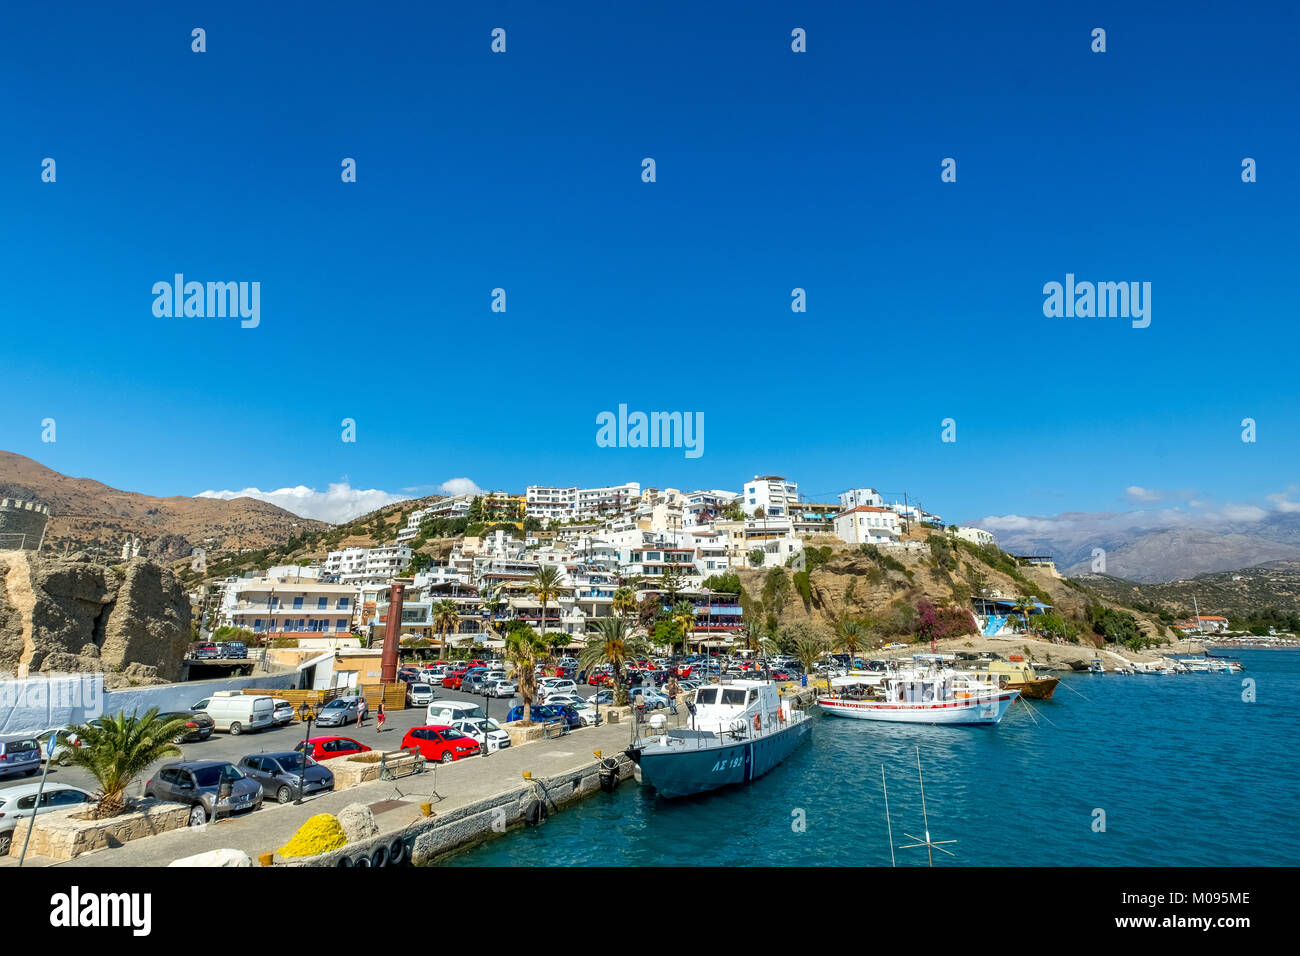 Fischerboote im Hafen von Agia Galini, Kreta, Griechenland, Europa, Agia Galini, Europa, Kreta, Griechenland, GR, Reise, Tourismus, Reiseziel, Sightse Foto Stock